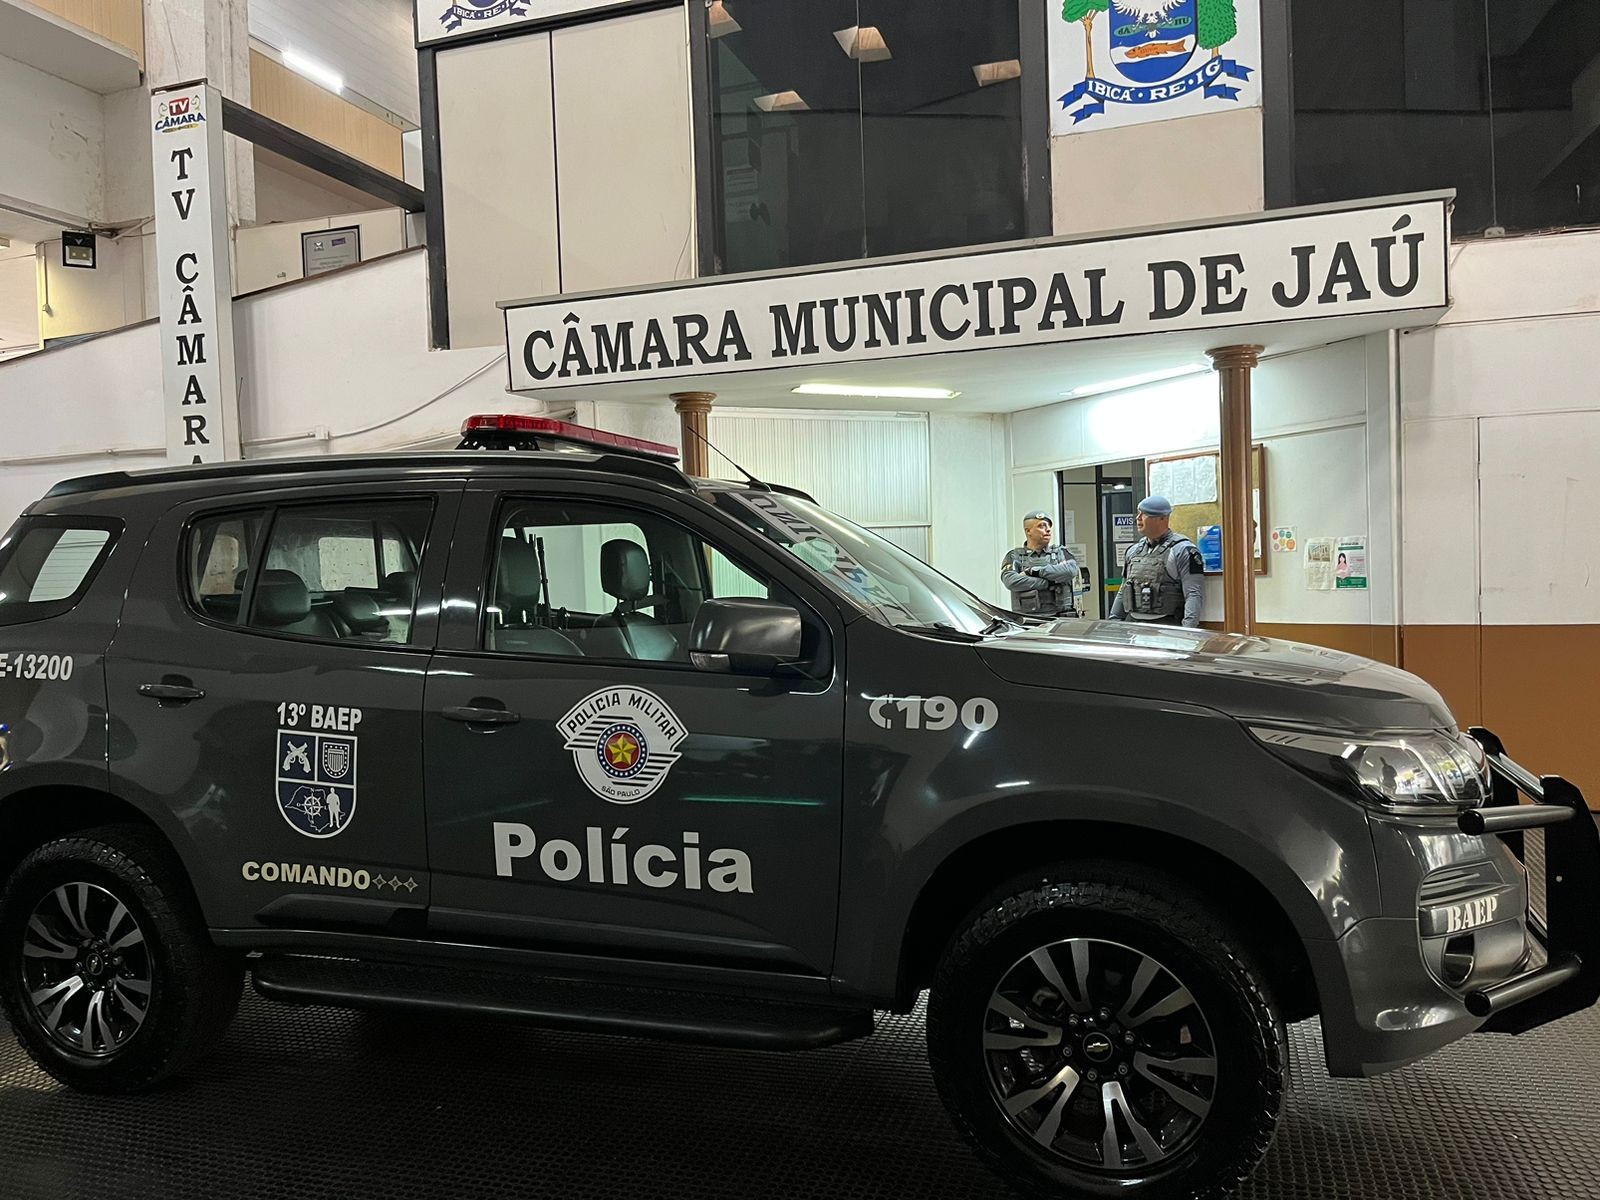 Vereadores de Jaú são afastados após operação do Gaeco e da PM que investiga suposta organização criminosa